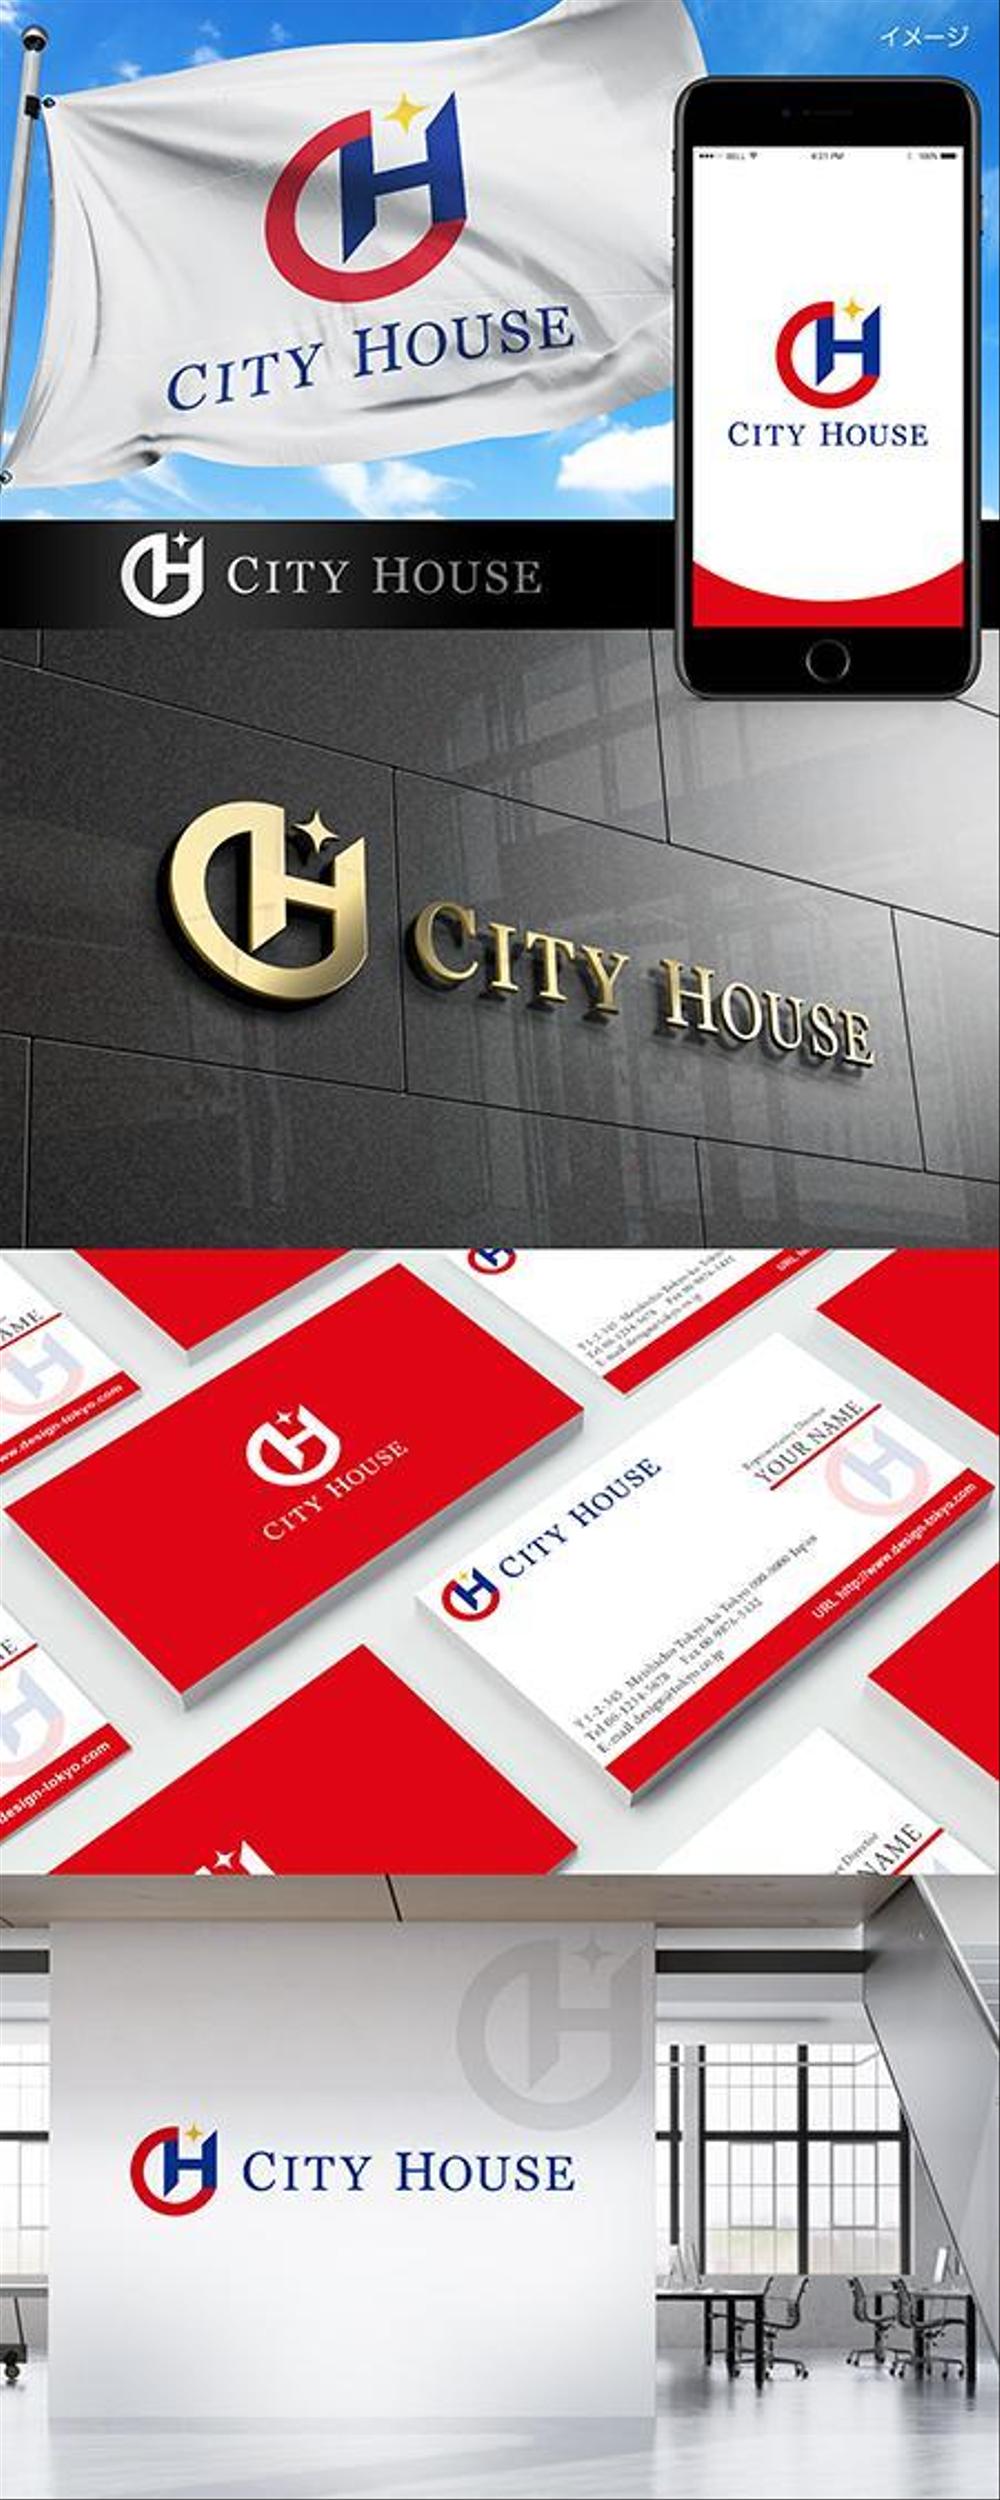 不動産会社「CITY HOUSE (CAMBODIA) CO., LTD.」のロゴ